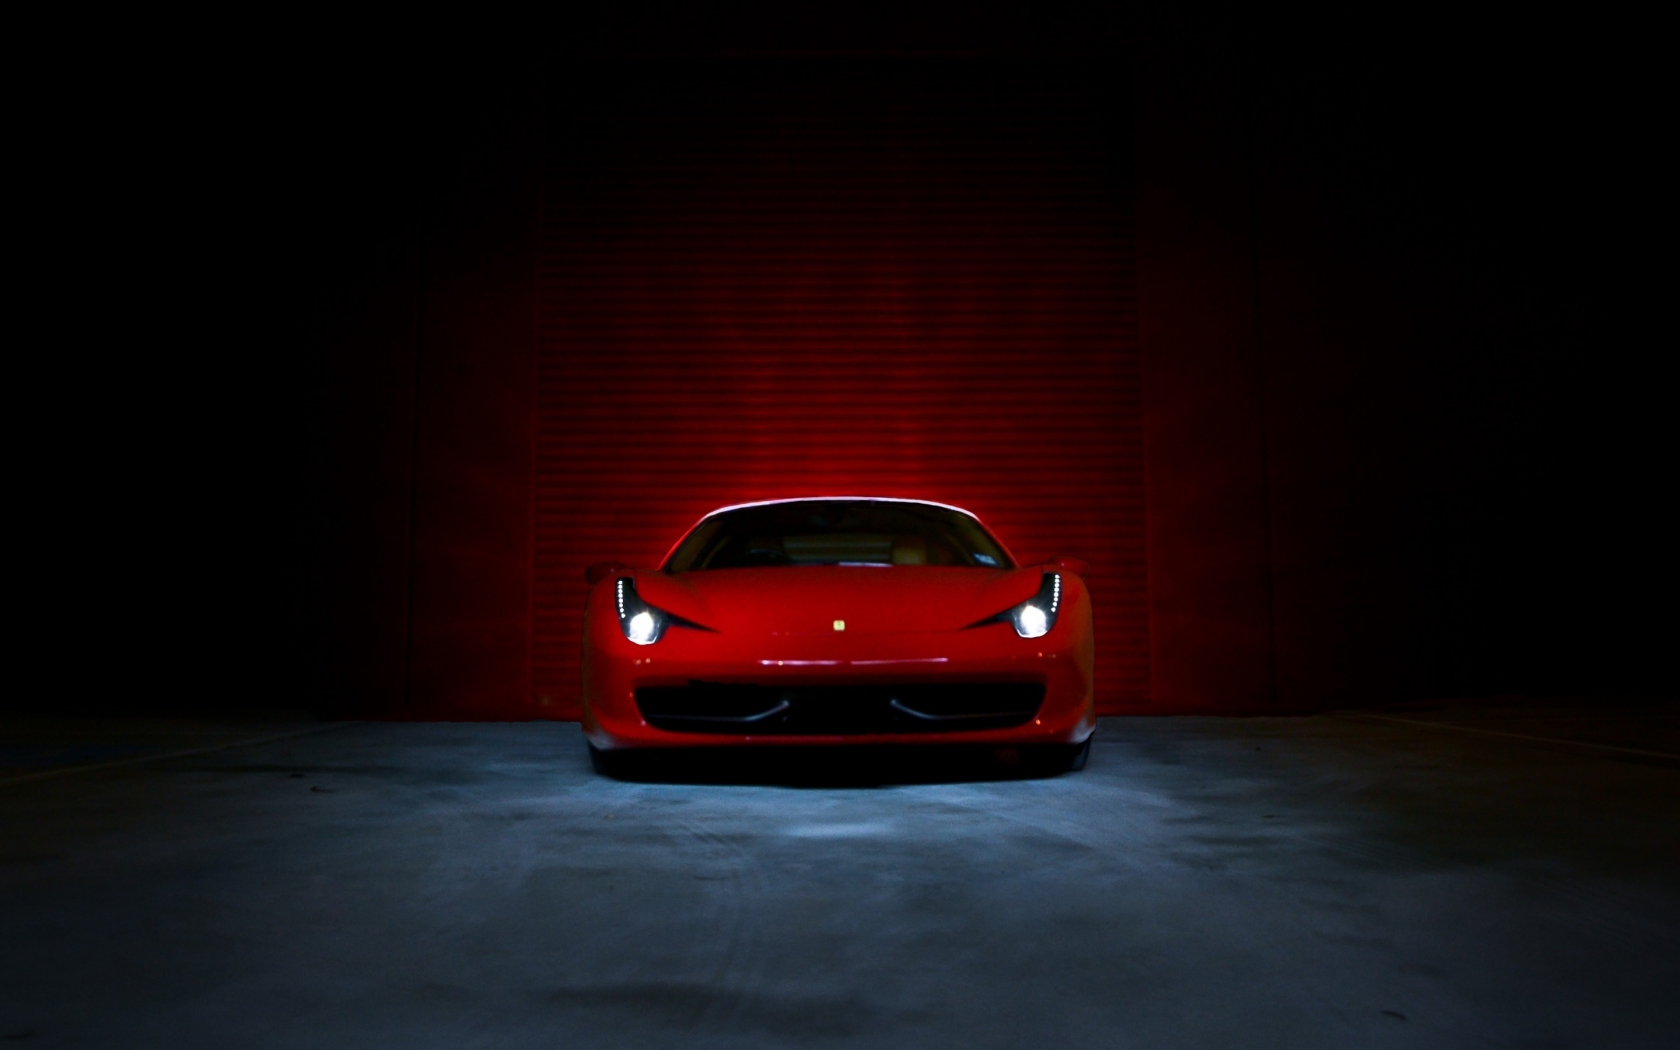 Ferrari 458 Italia Red  for 1680 x 1050 widescreen resolution